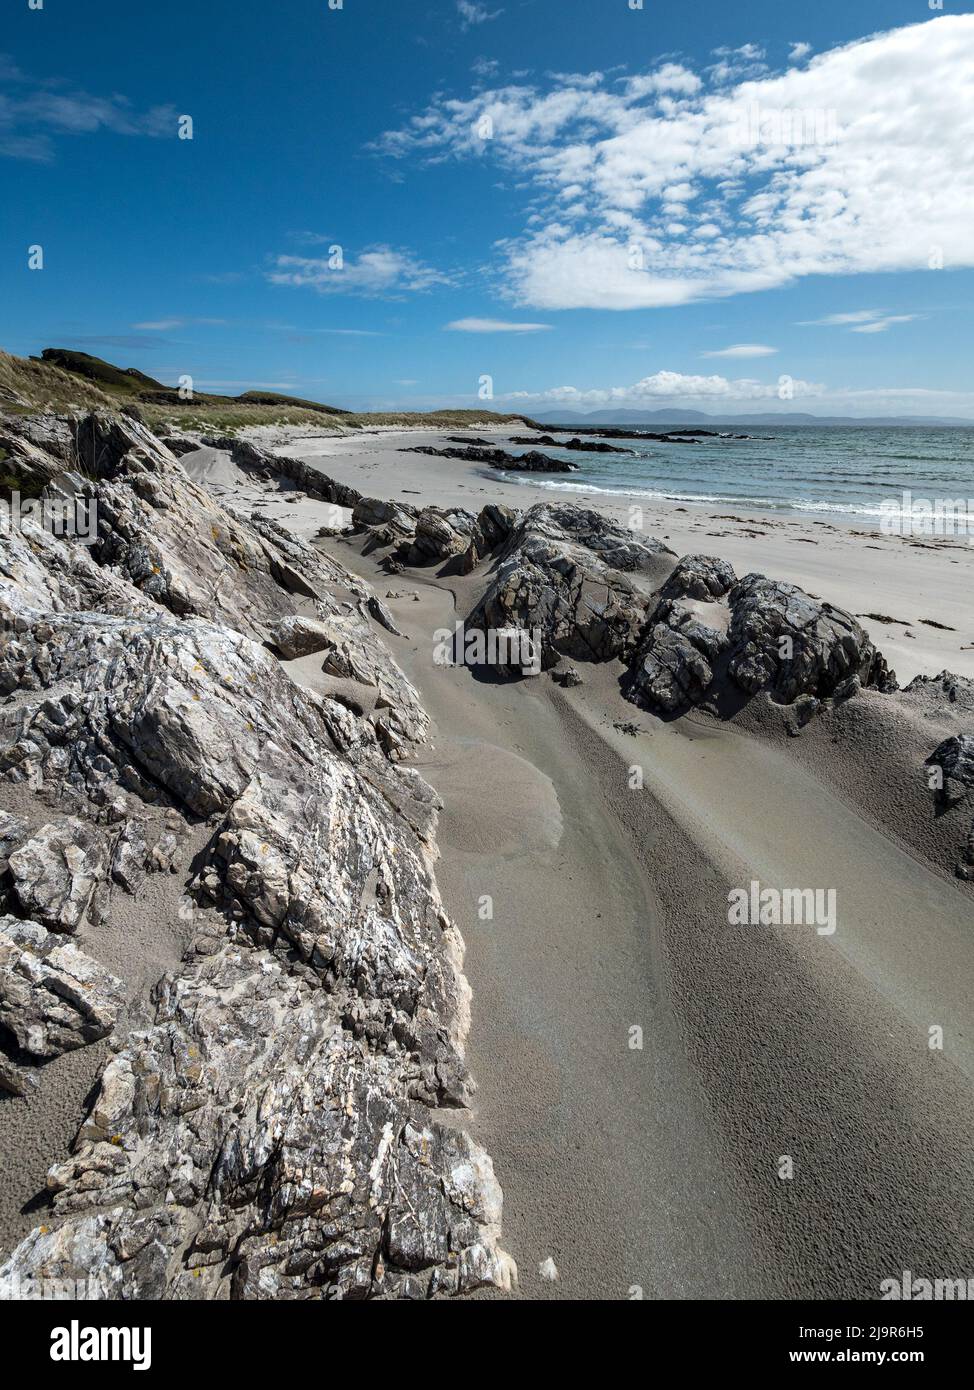 Felsen und weißer Sand der Strände von The Strand auf der abgelegenen Hebriden-Insel Colonsay, Schottland, Großbritannien Stockfoto